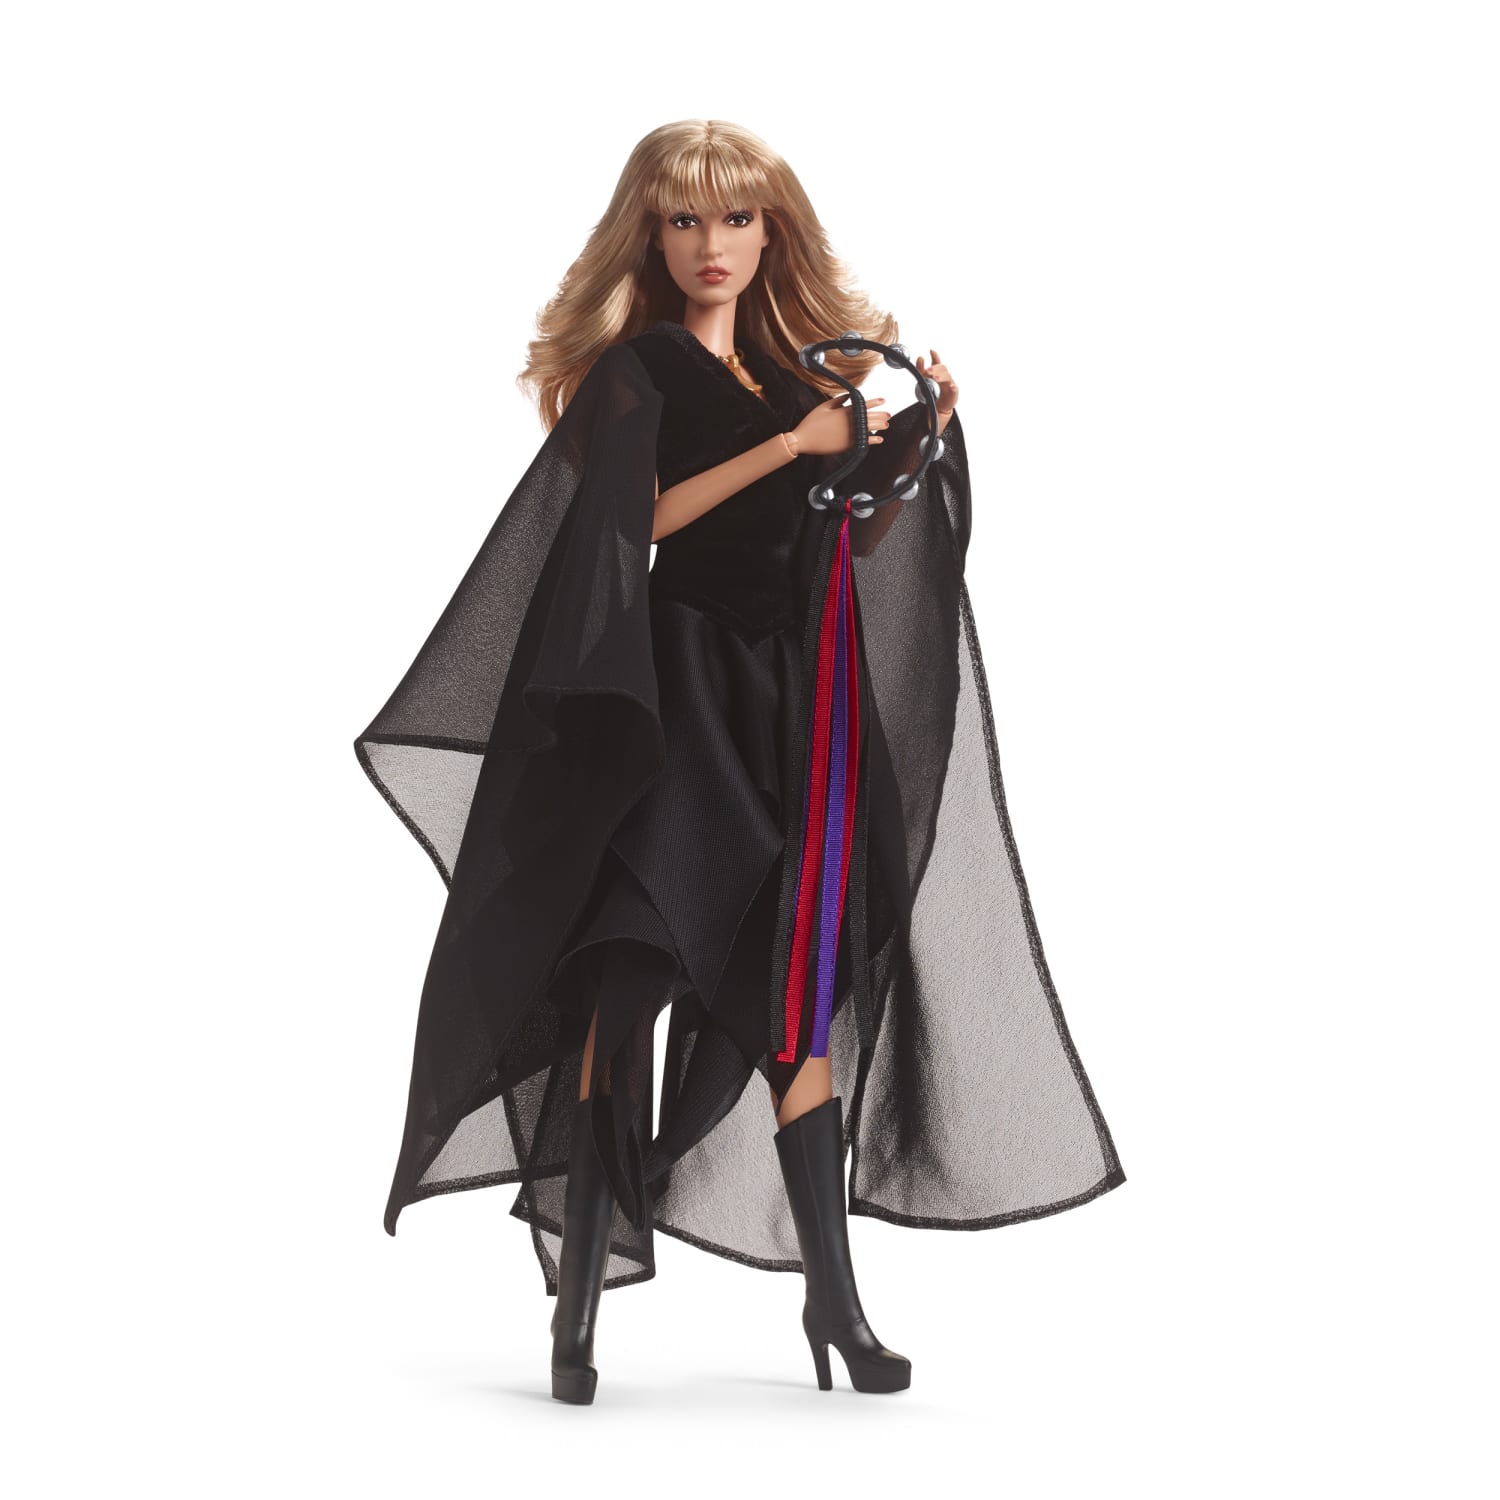 Stevie Nicks Barbie Doll Debuts with Landslide of 1-Star Reviews